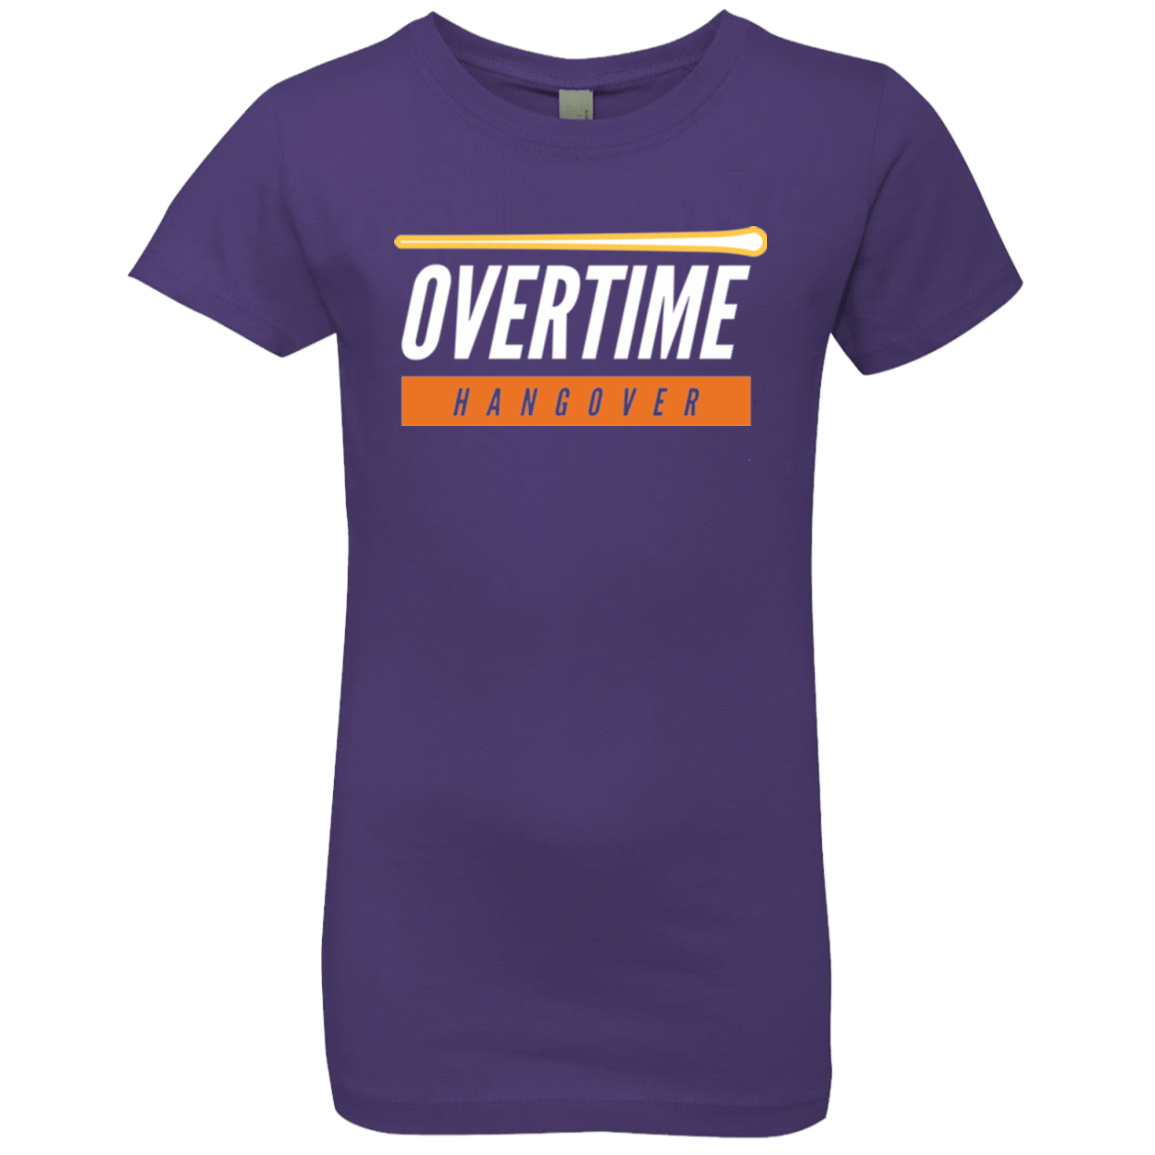 T-Shirts Purple Rush / YXS 99 Percent Hangover Girls Premium T-Shirt